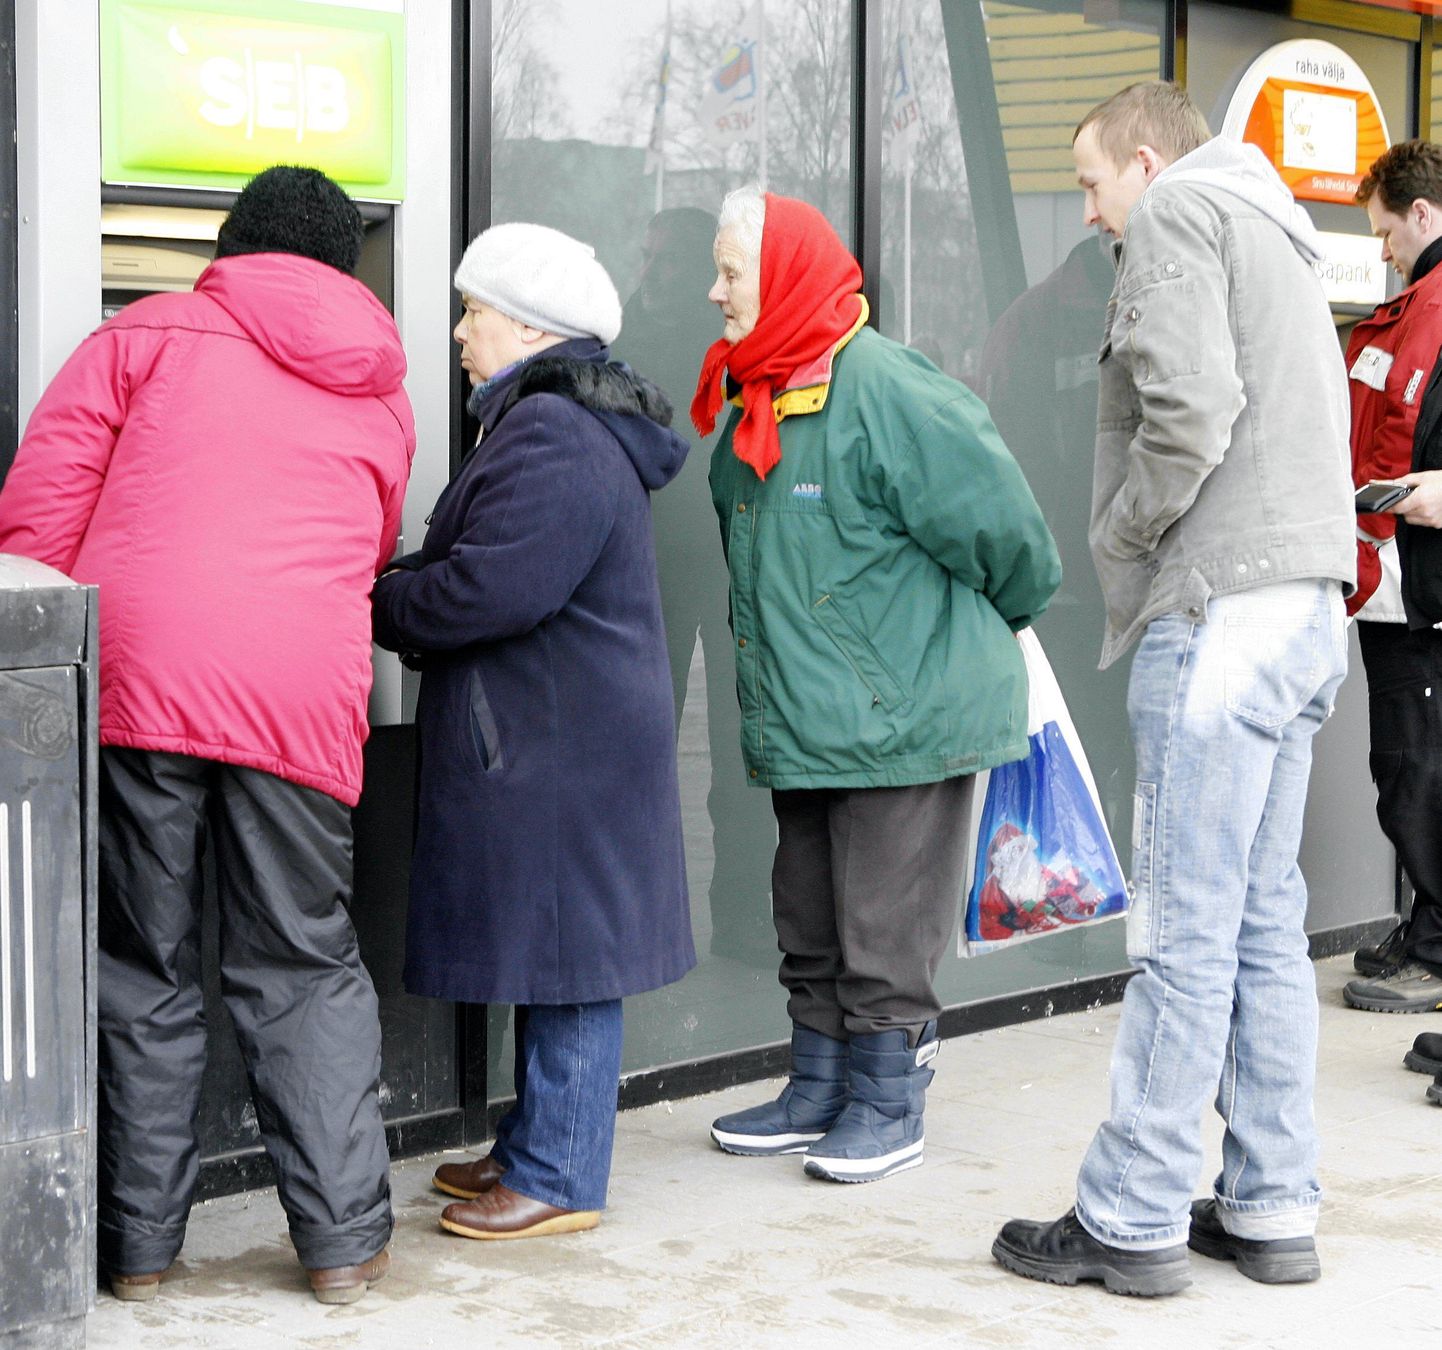 Täna näeb rahaautomaatide juures tavalisest rohkem eakaid inimesi.